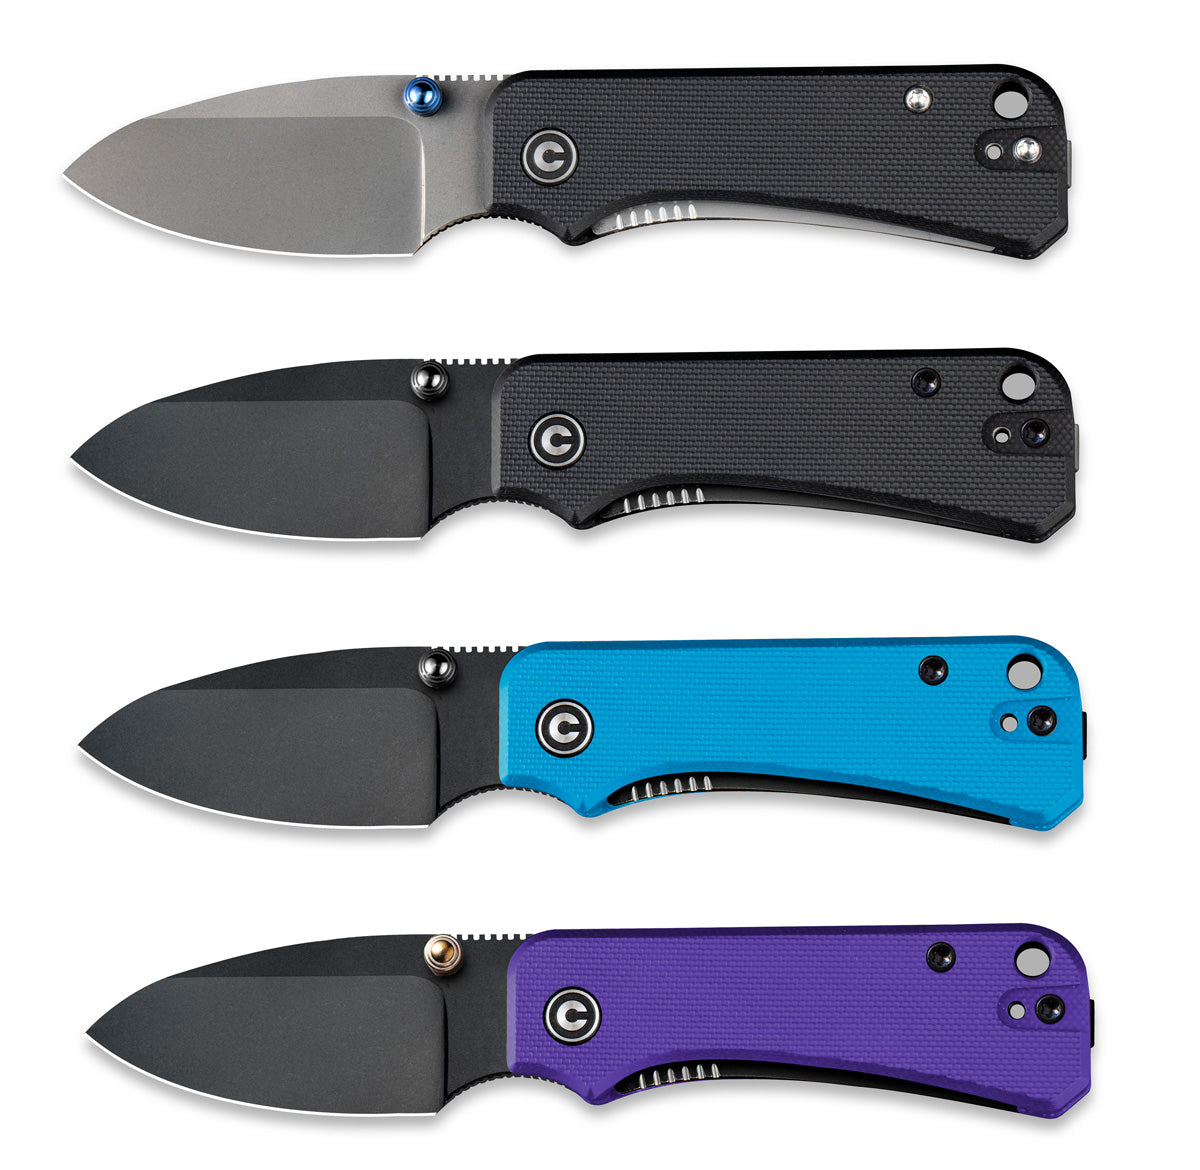 Civivi Baby Banter Folding Knife Purple G10 Handle Nitro-V Plain